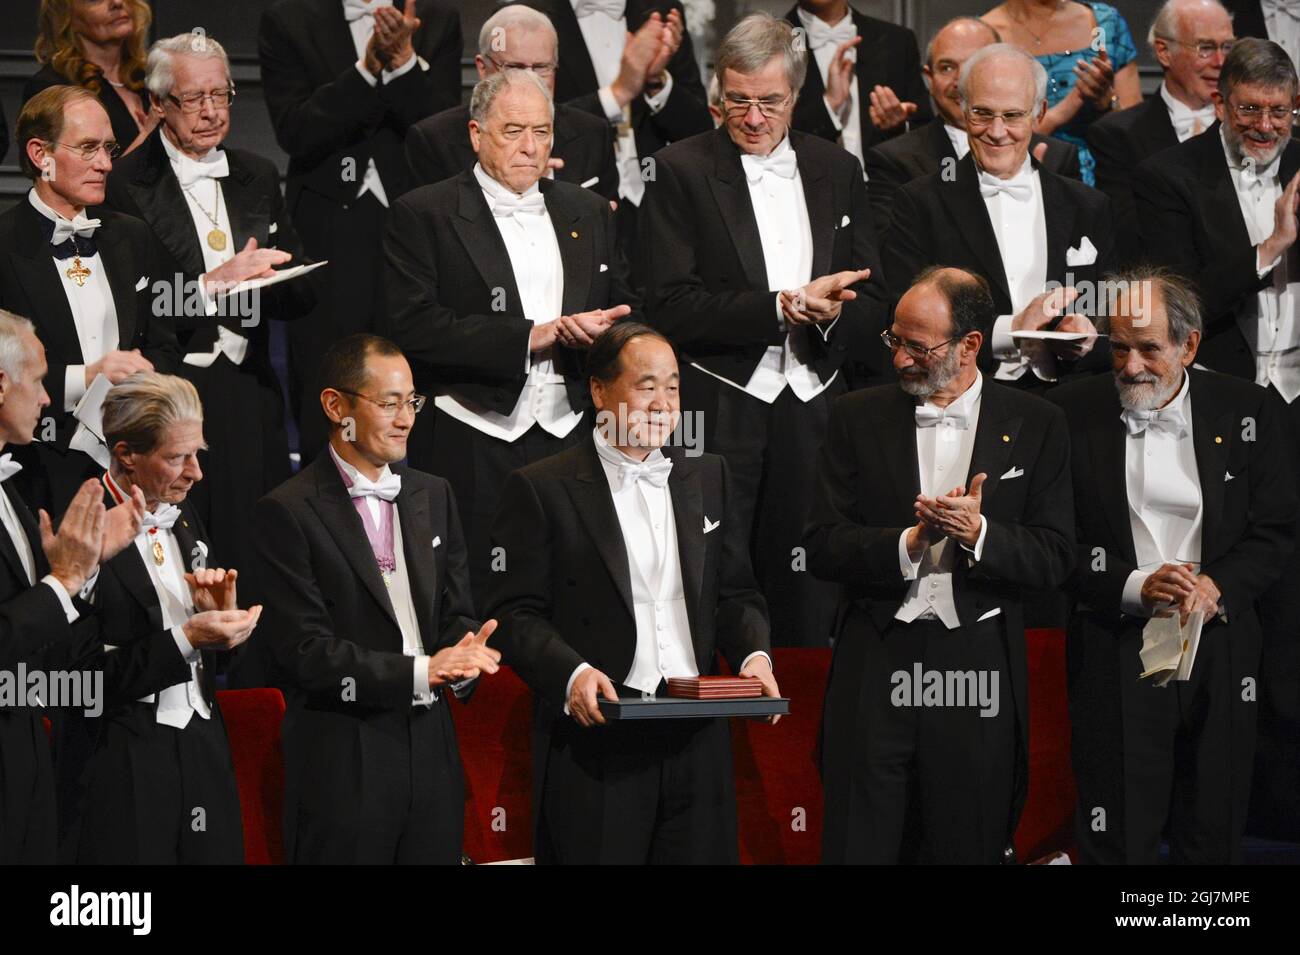 ESTOCOLMO 20121210 Mo Yan de China 8center) recibe el Premio Nobel de Literatura 2012 durante la Ceremonia de Premios Nobel en la Sala de Conciertos de Estocolmo Suecia, 10 de diciembre de 2012. Foto Henrik Montgomery / SCANPIX kod 10060 Foto de stock